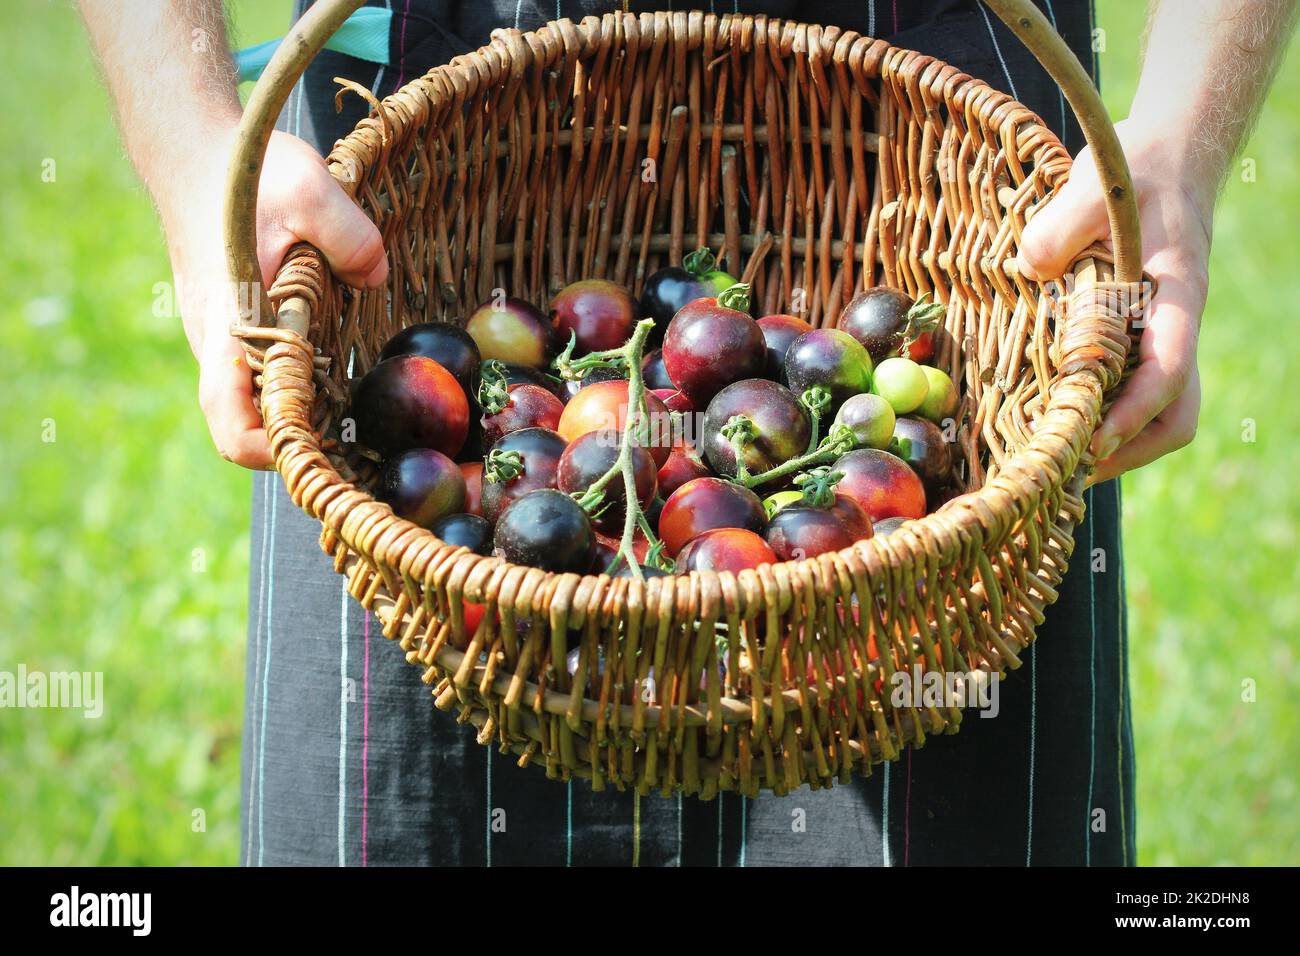 Erbsortentomaten im Korb. Landwirt, der die Ernte schwarzer Tomaten hält. Bunte Tomaten - rot, gelb, schwarz, orange. Gemüseküche-Konzeption Stockfoto